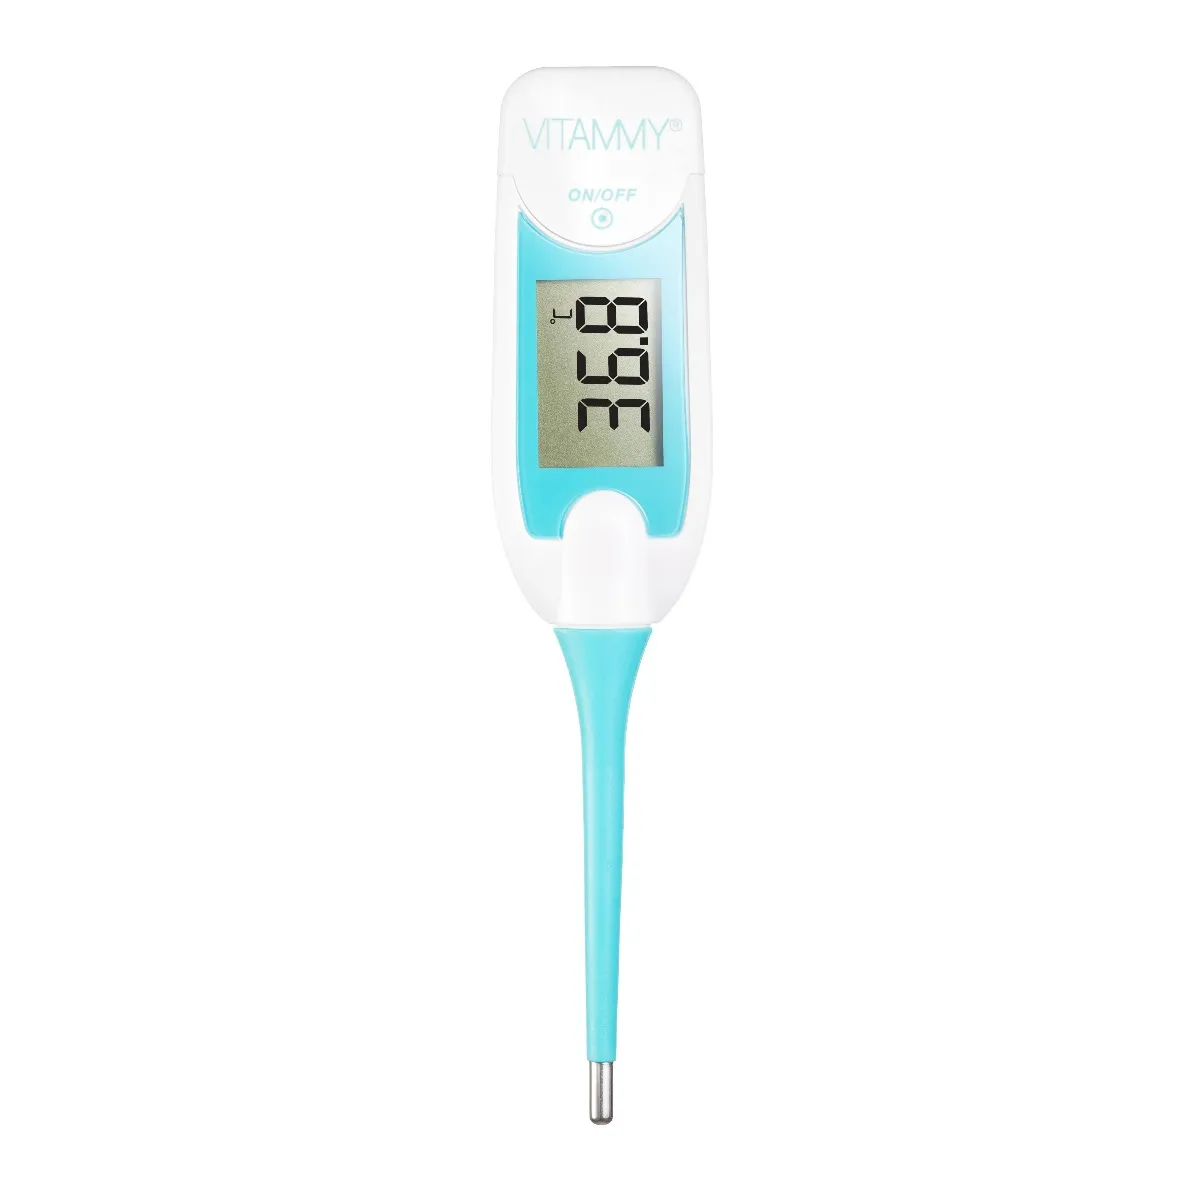 Vitammy Control termometr elektroniczny, 1 sztuka 